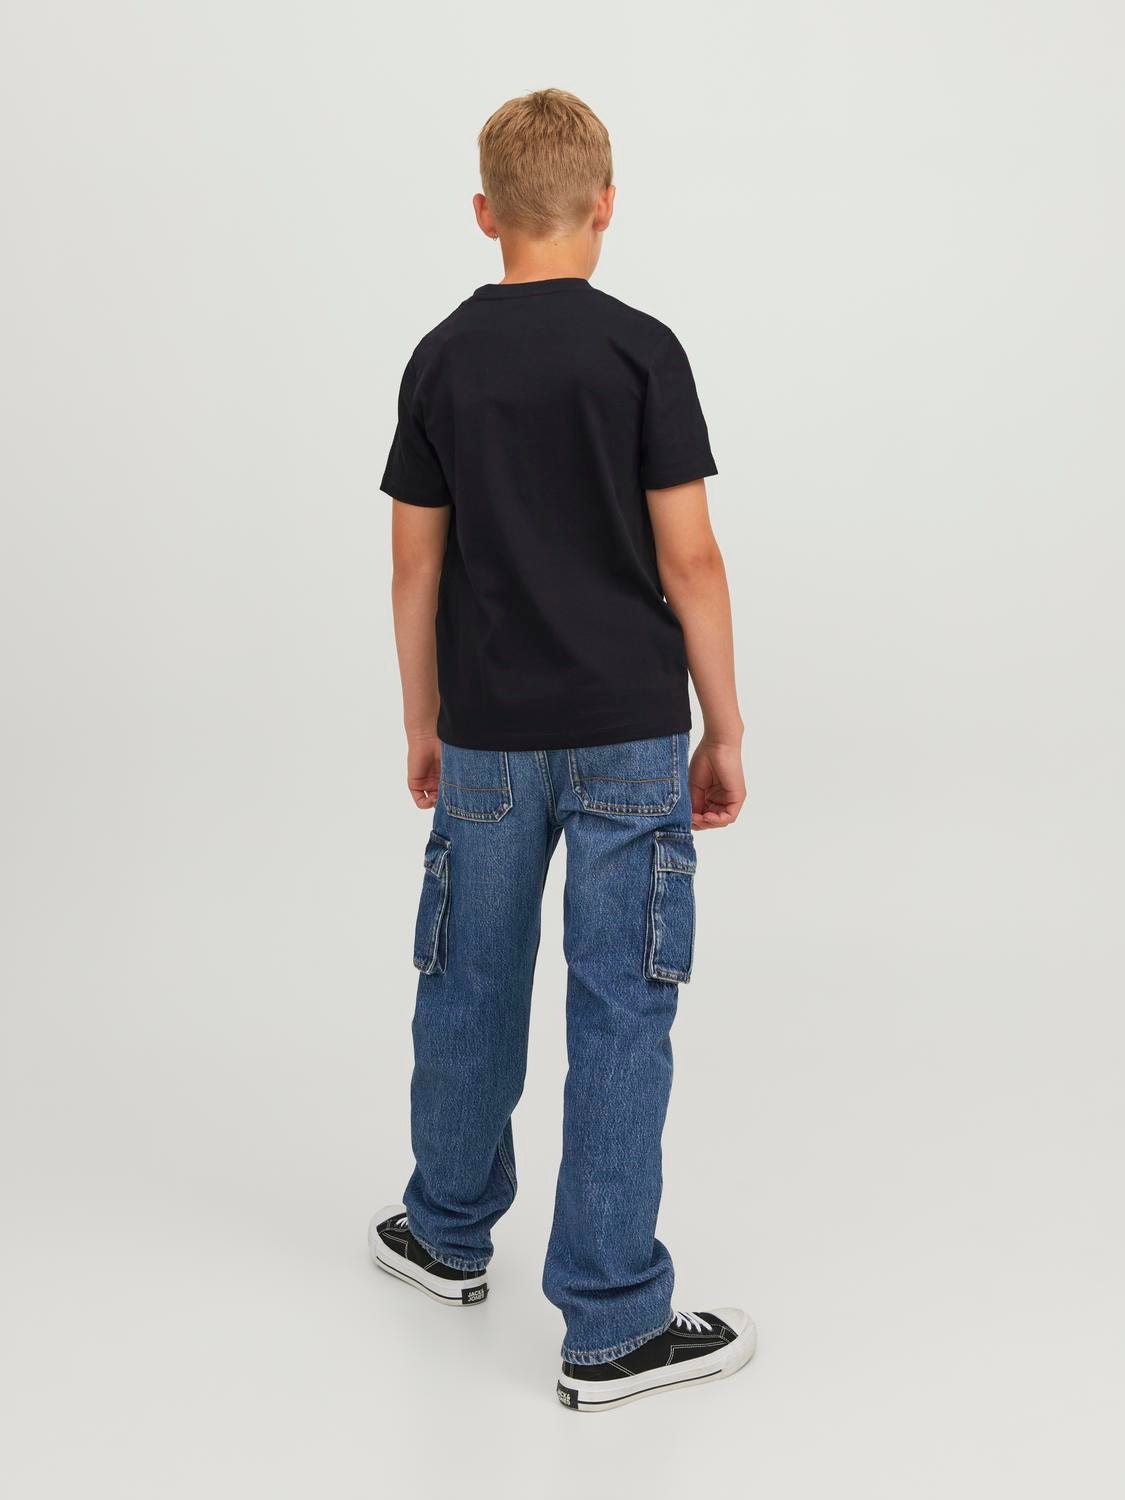 Jack & Jones T-shirt Con stampa fotografica Per Bambino -Black - 12242845